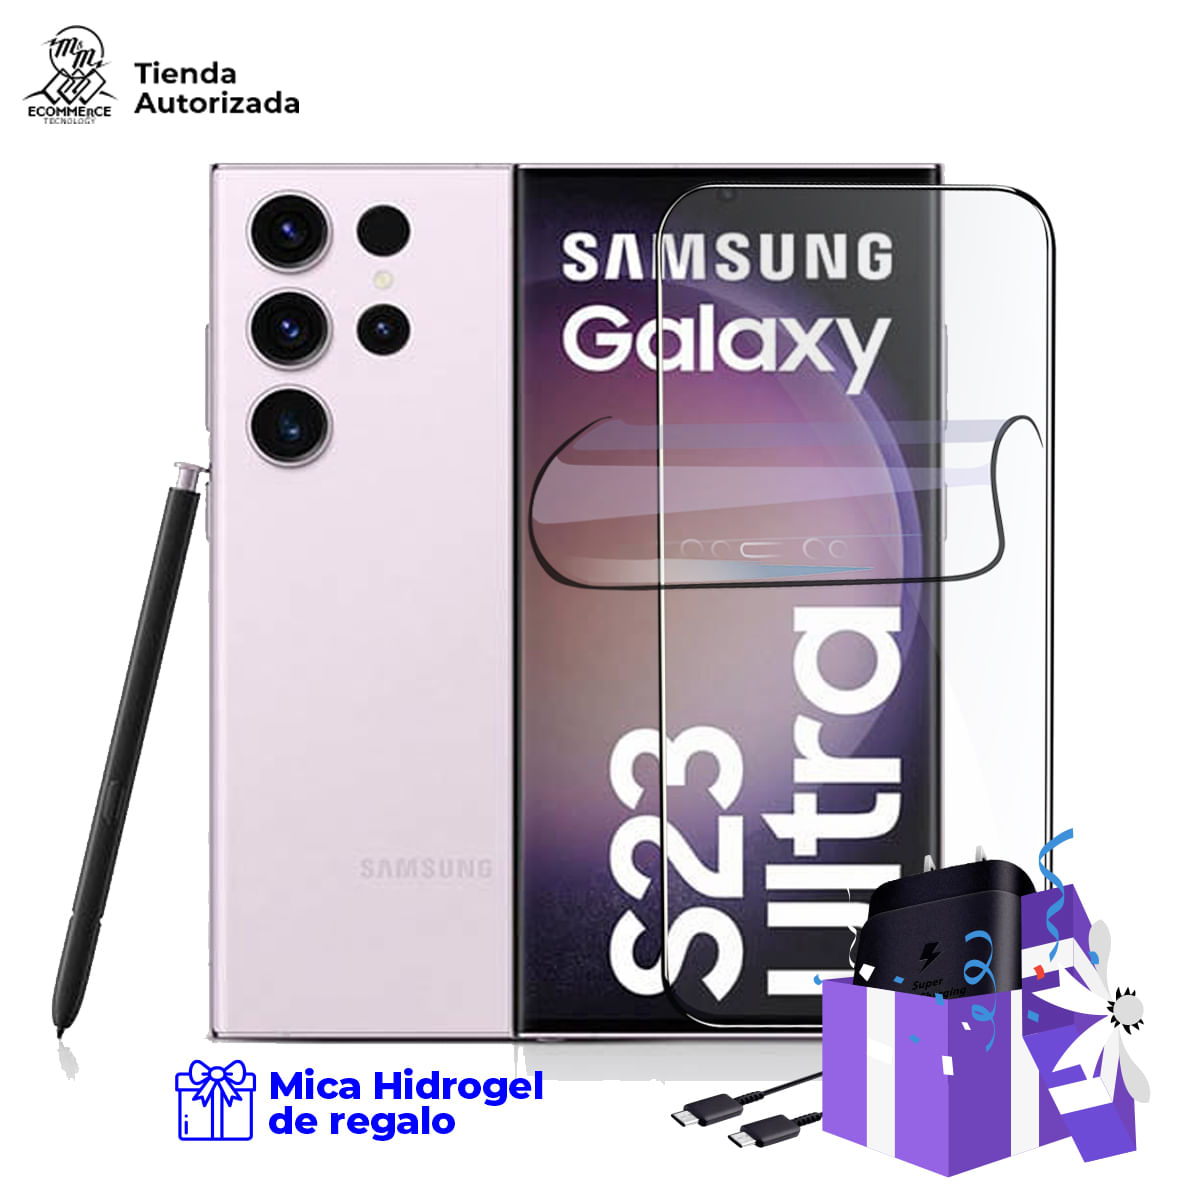 Samsung Galaxy S23 Ultra 12Gb Lavander 512Gb con Cargador 25W Y Mica Hidrogel